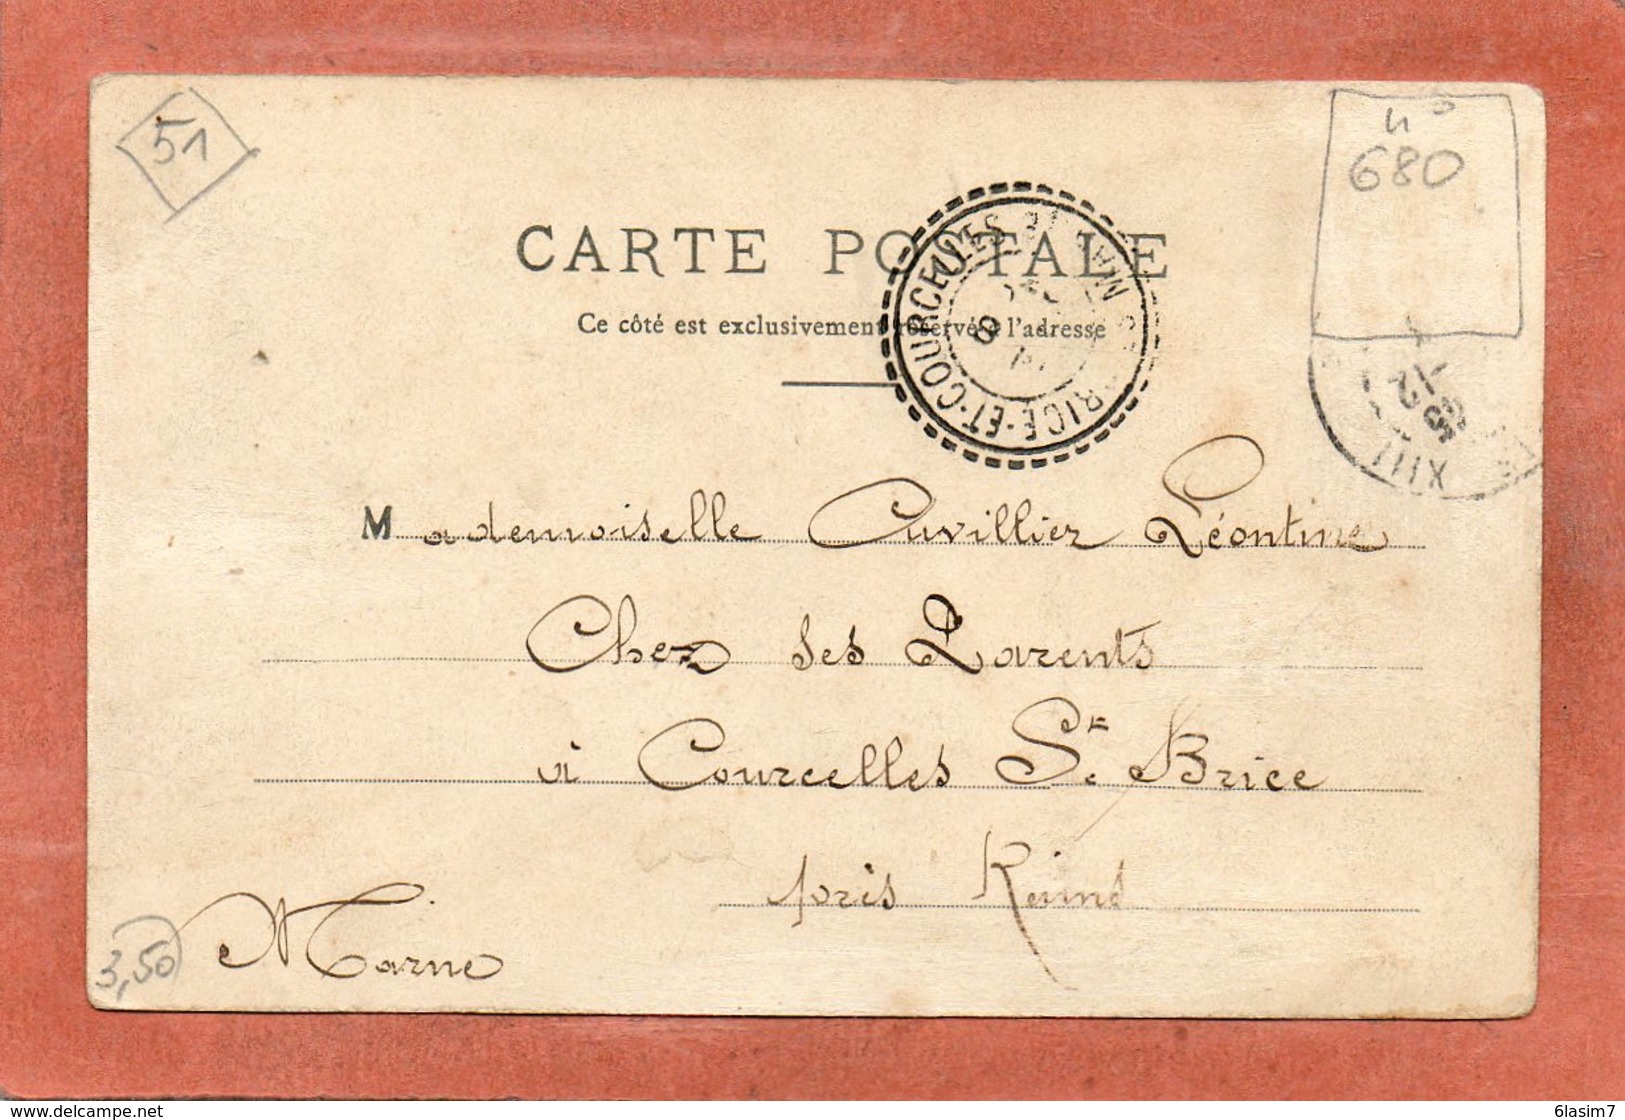 CPA - Environs De REIMS (51) - Aspect De L'entrée Du Bourg Par La Route De Champigny En 1903 - Champigny